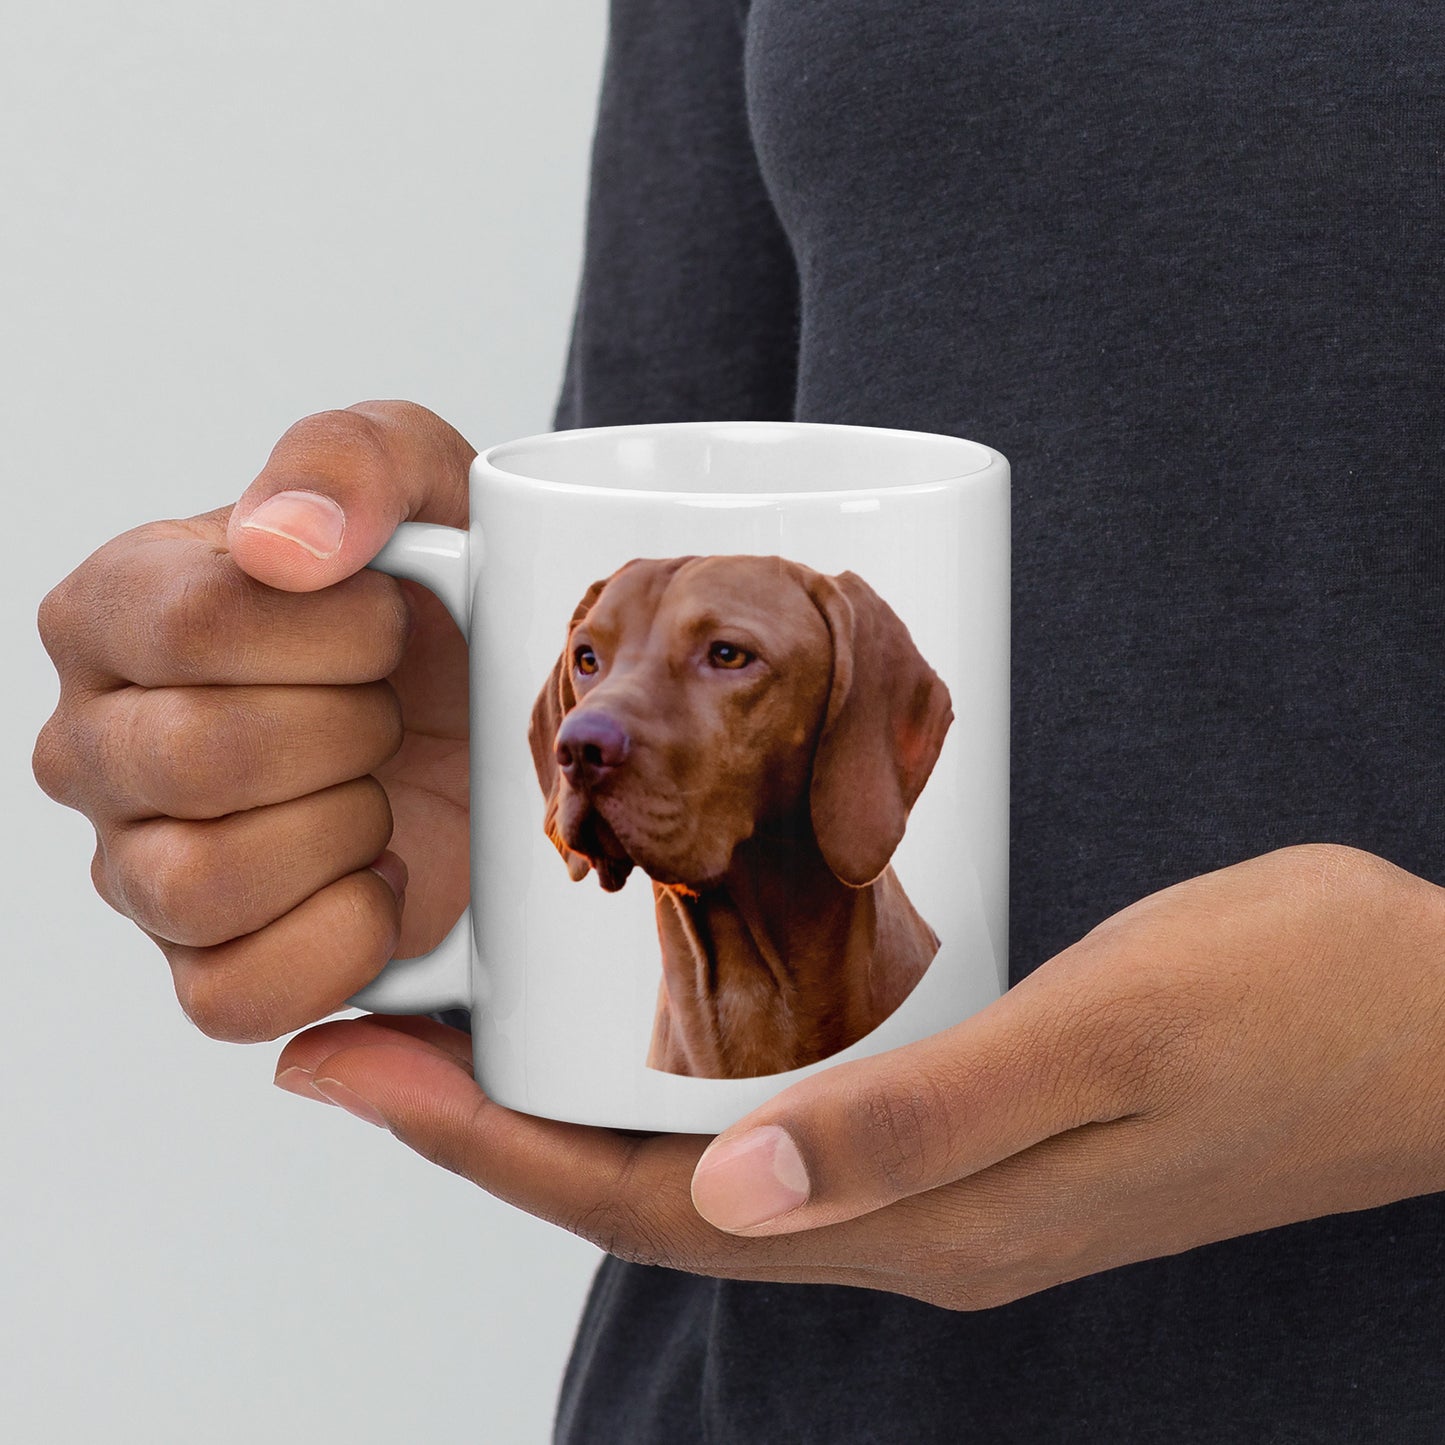 Glossy Mug printed with a Vizsla Gun Dog